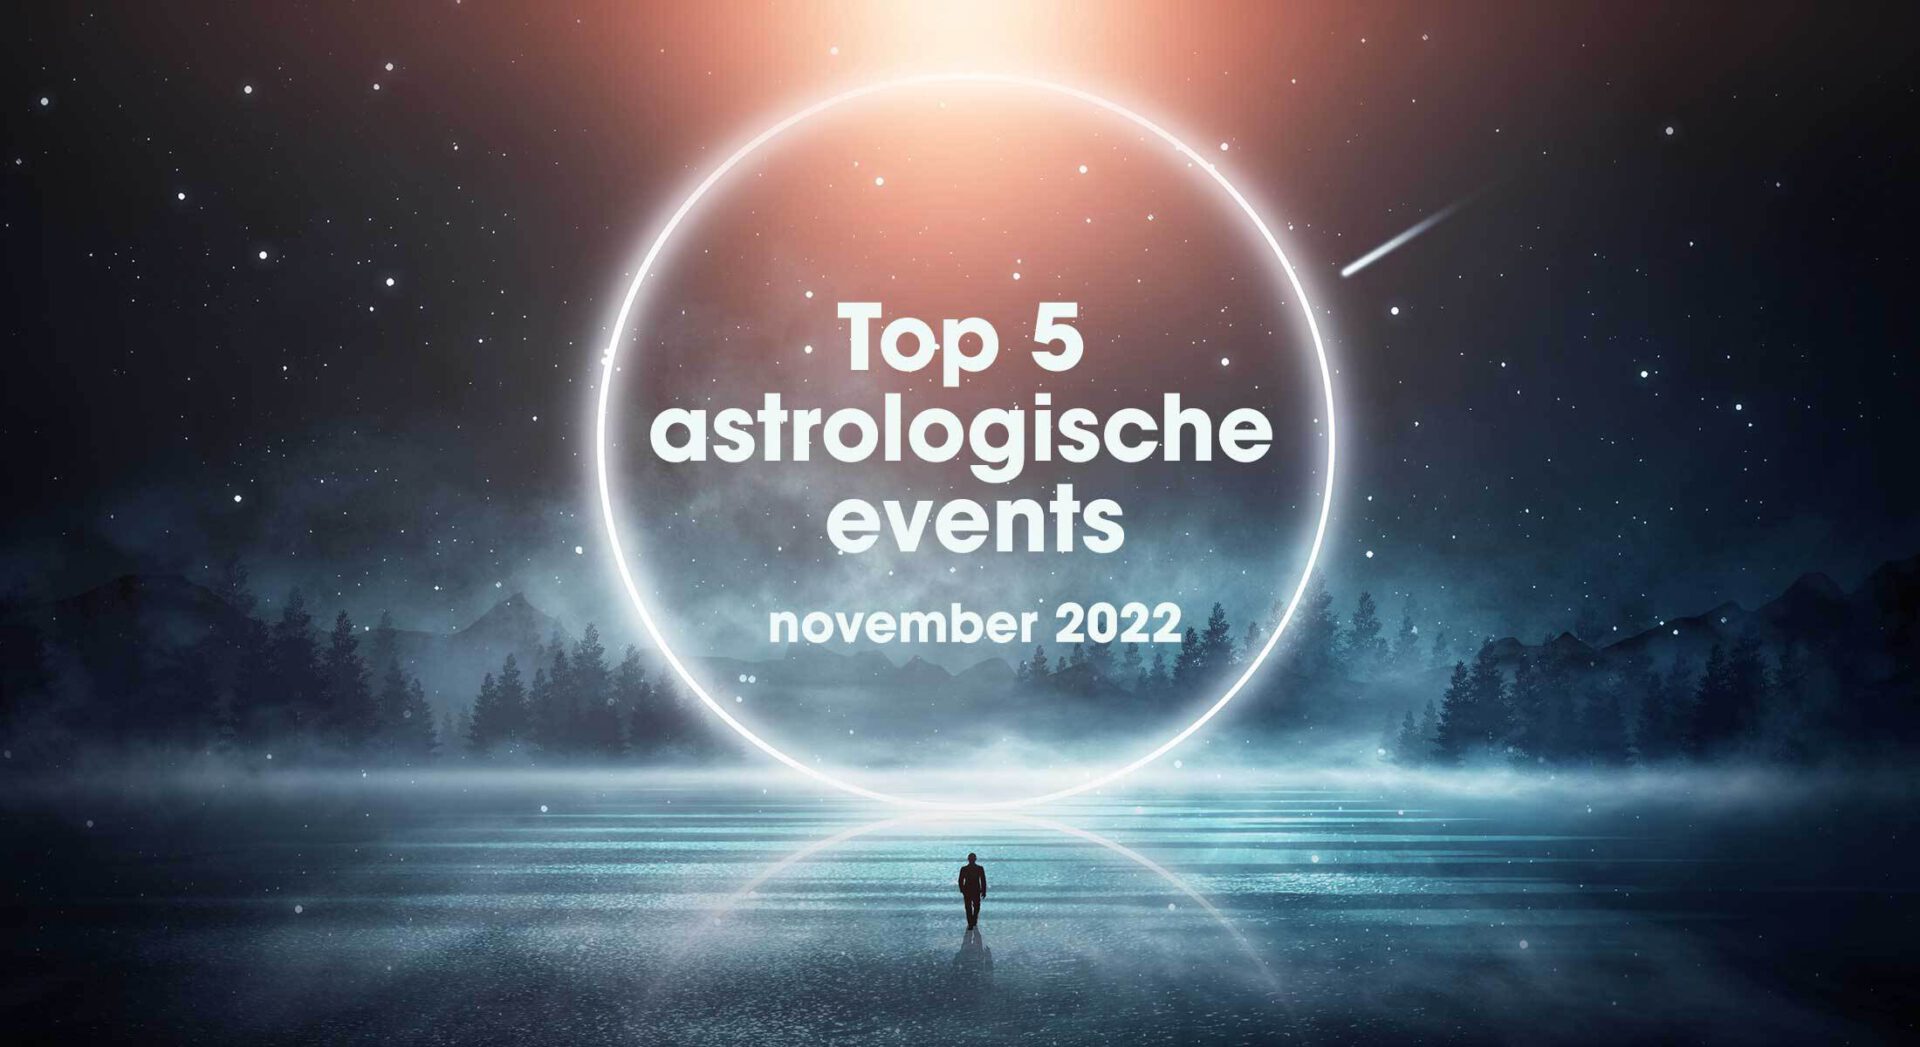 Top 5 astrologische transits en events in november 2022